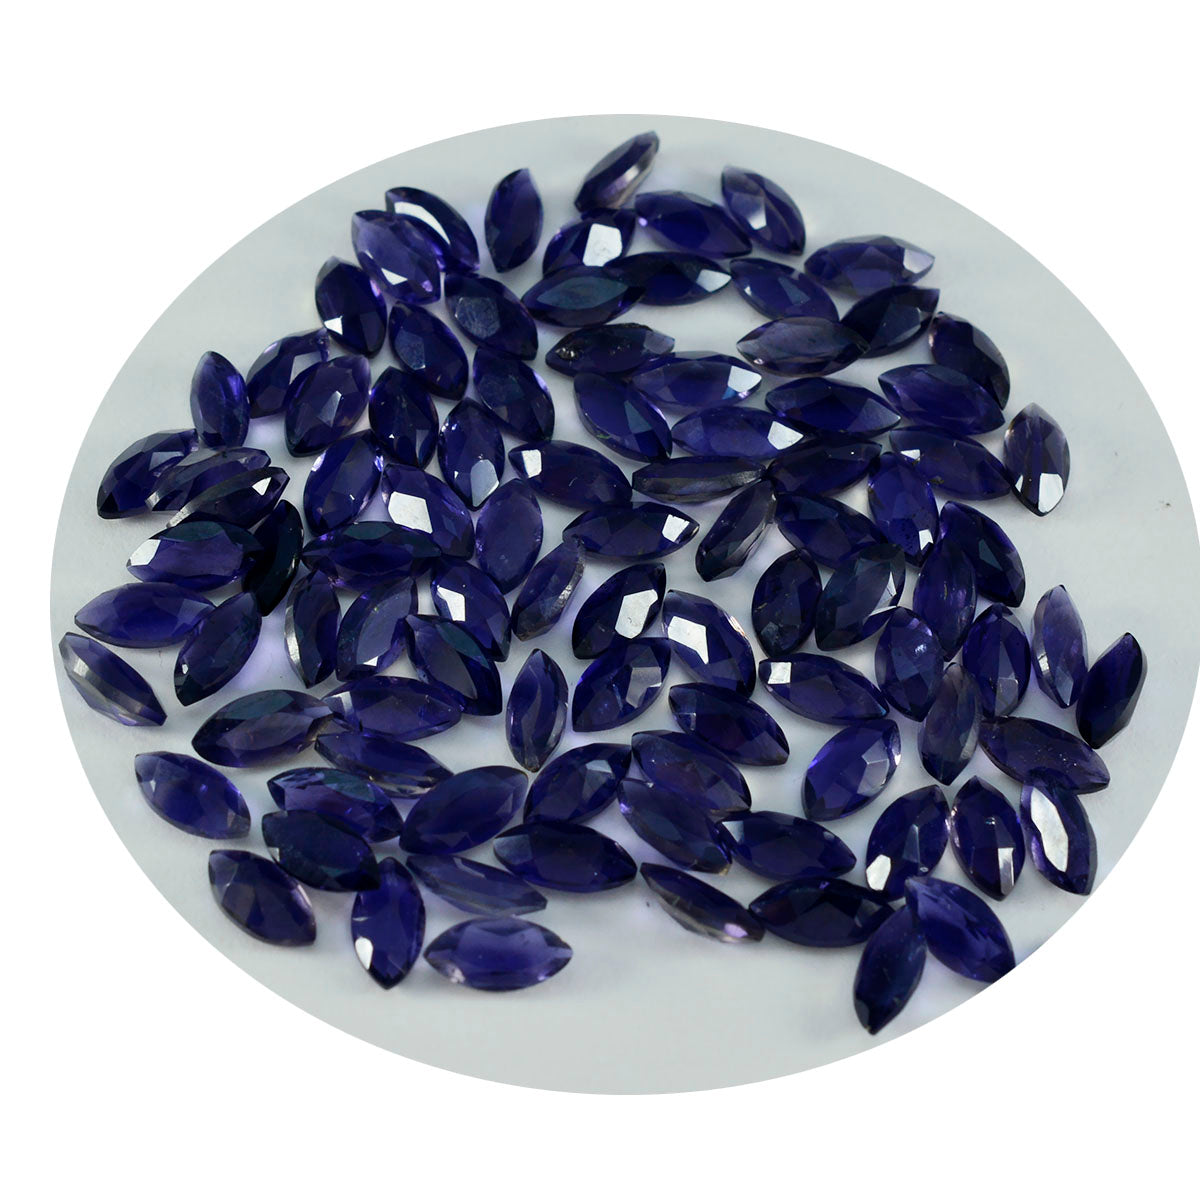 Riyogems 1 Stück blauer Iolith, facettiert, 4 x 8 mm, Marquise-Form, hübscher Qualitäts-Edelstein